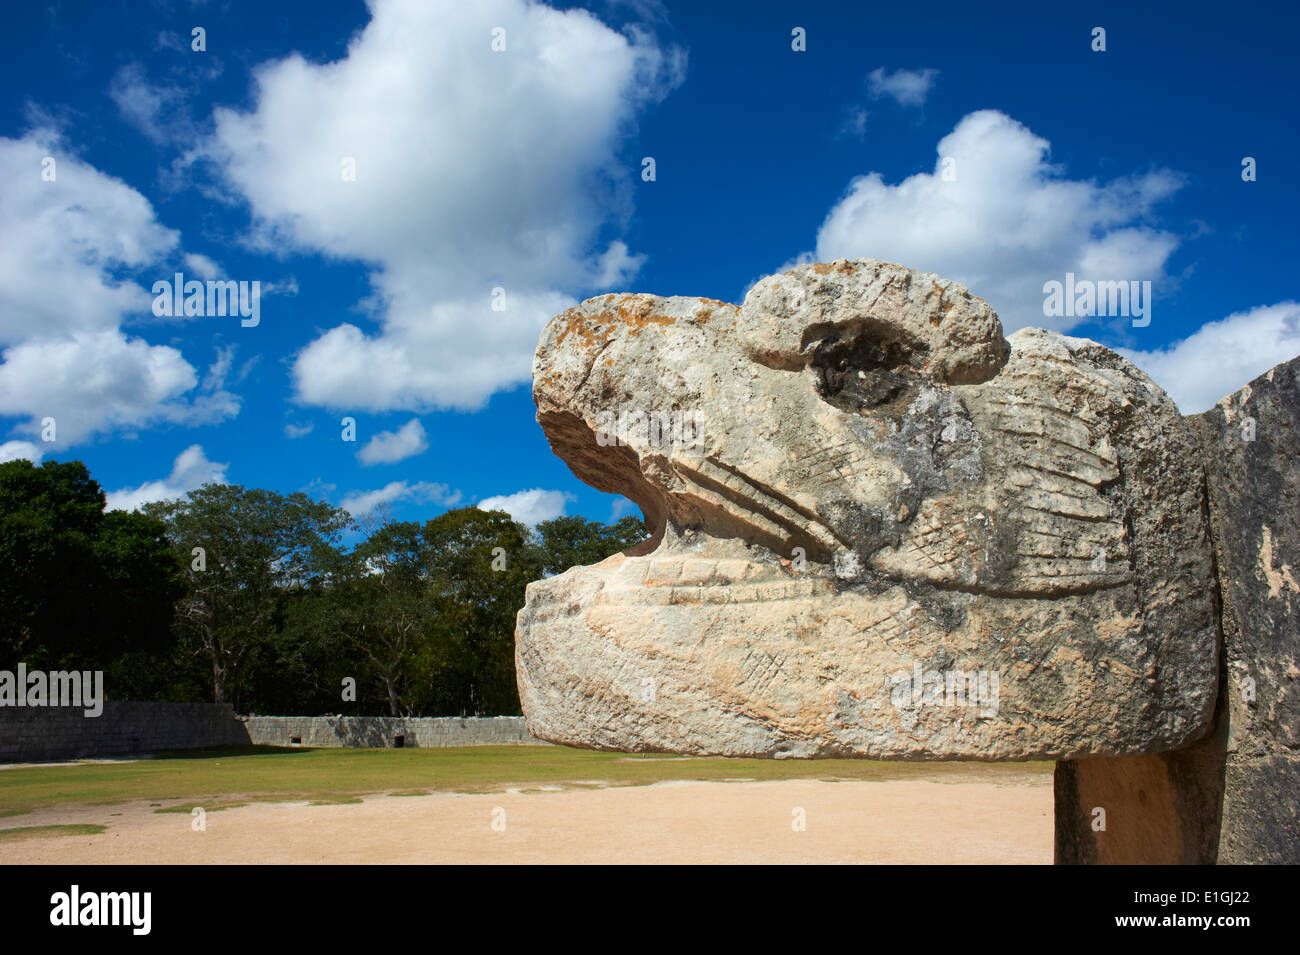 Le Mexique, l'état du Yucatan, Chichen Itza, site archéologique classé au patrimoine mondial de l'UNESCO, la tête de serpent, d'anciennes ruines maya Banque D'Images